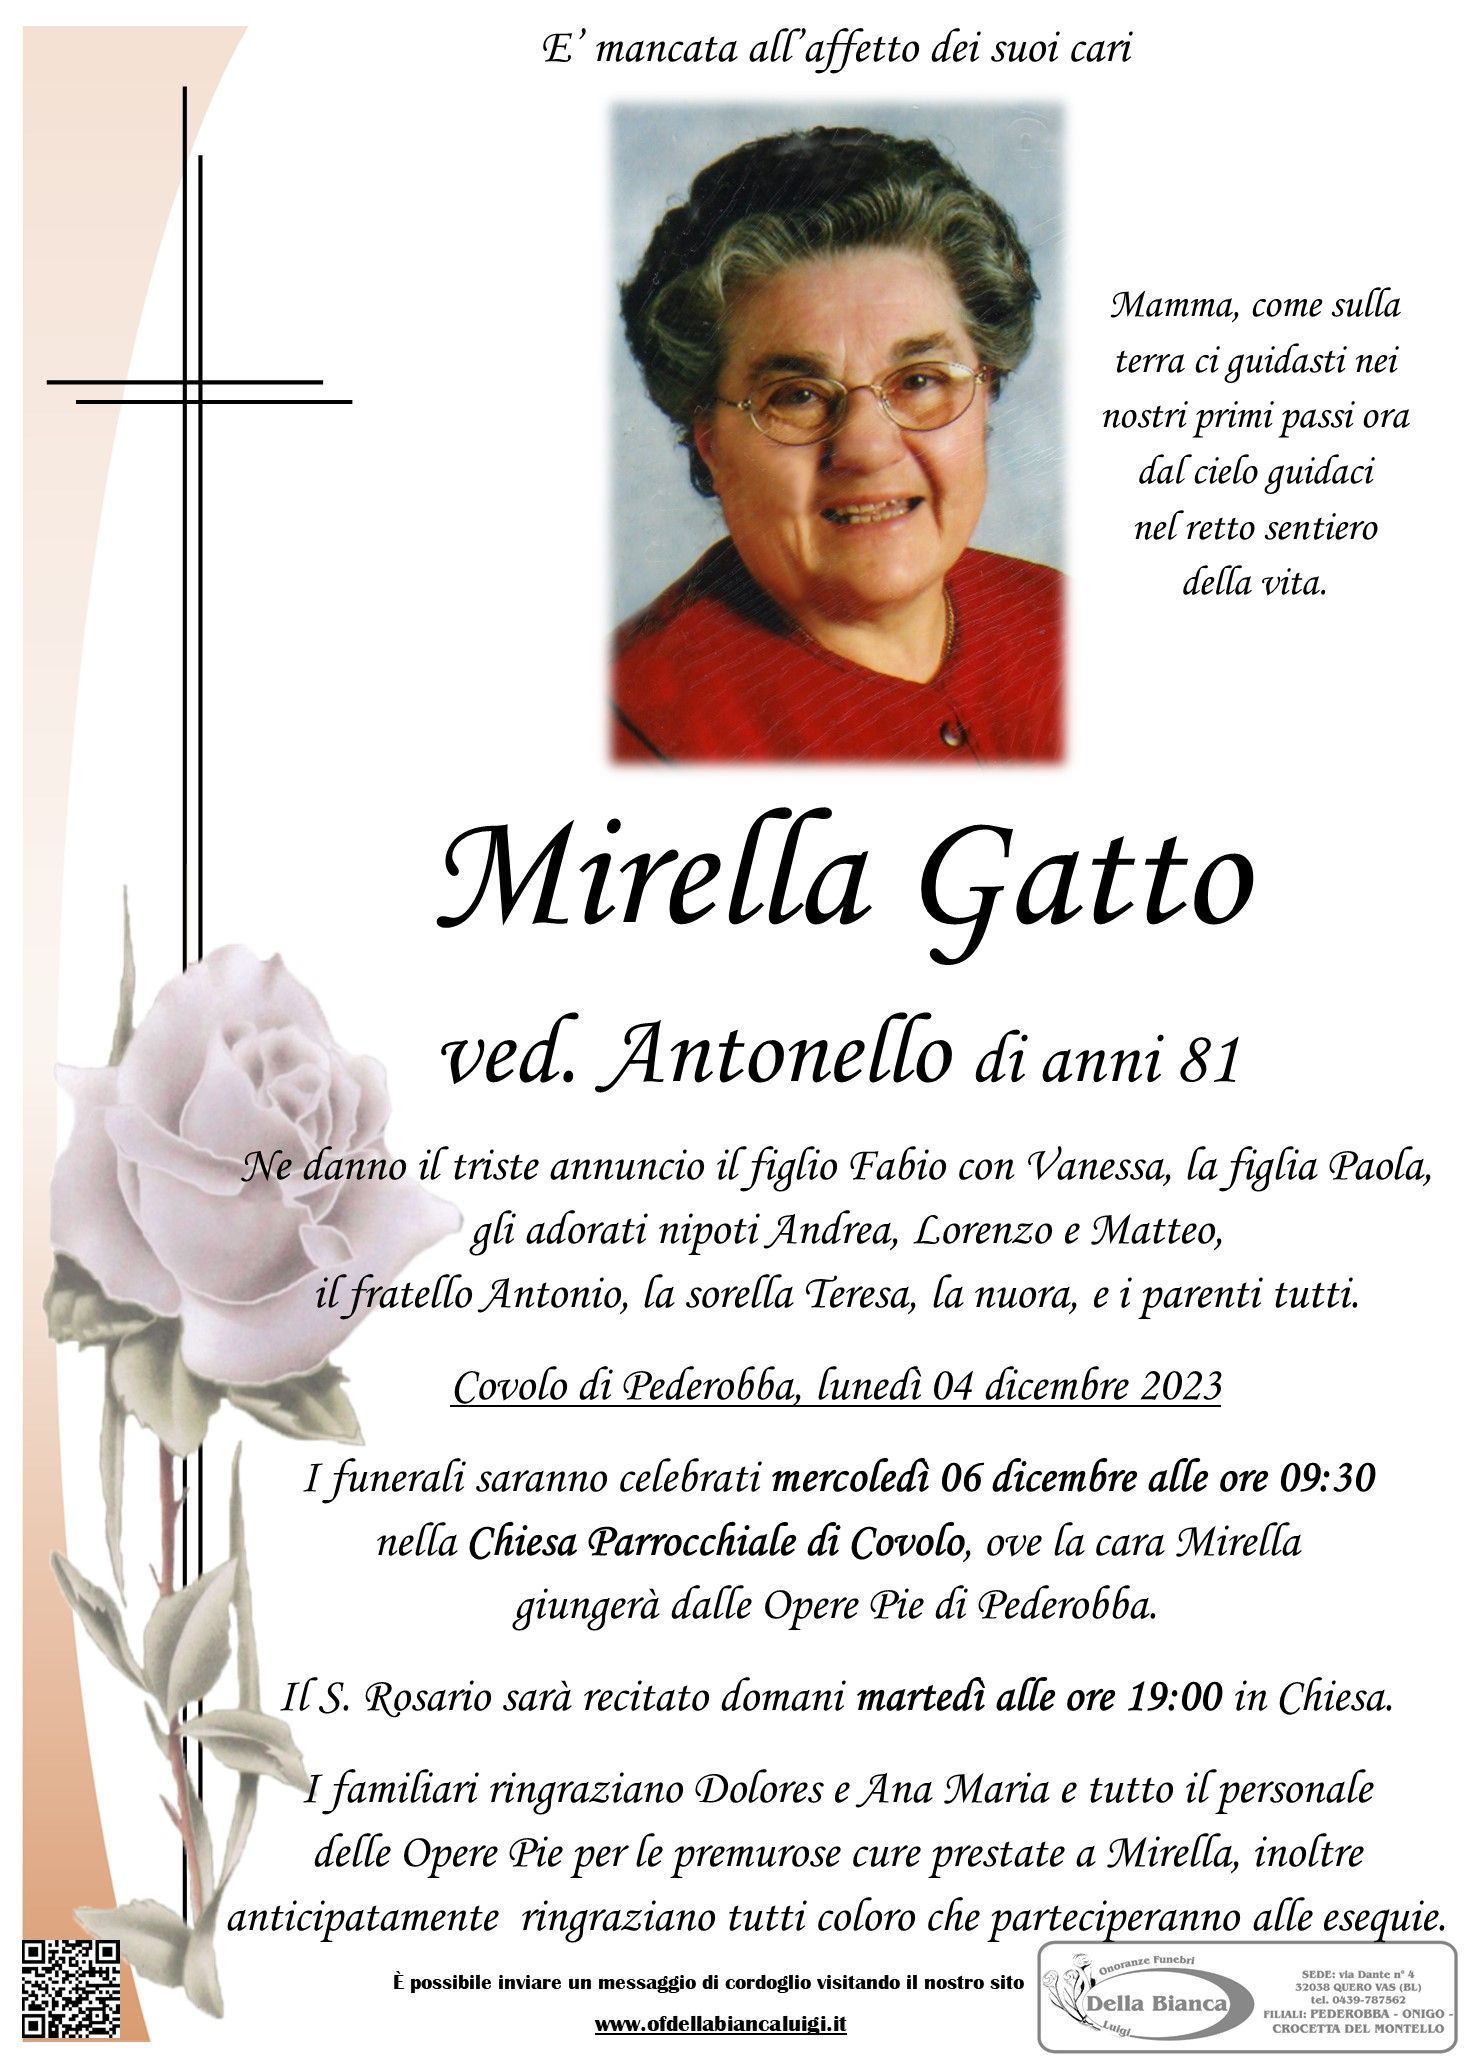 Mirella Gatto